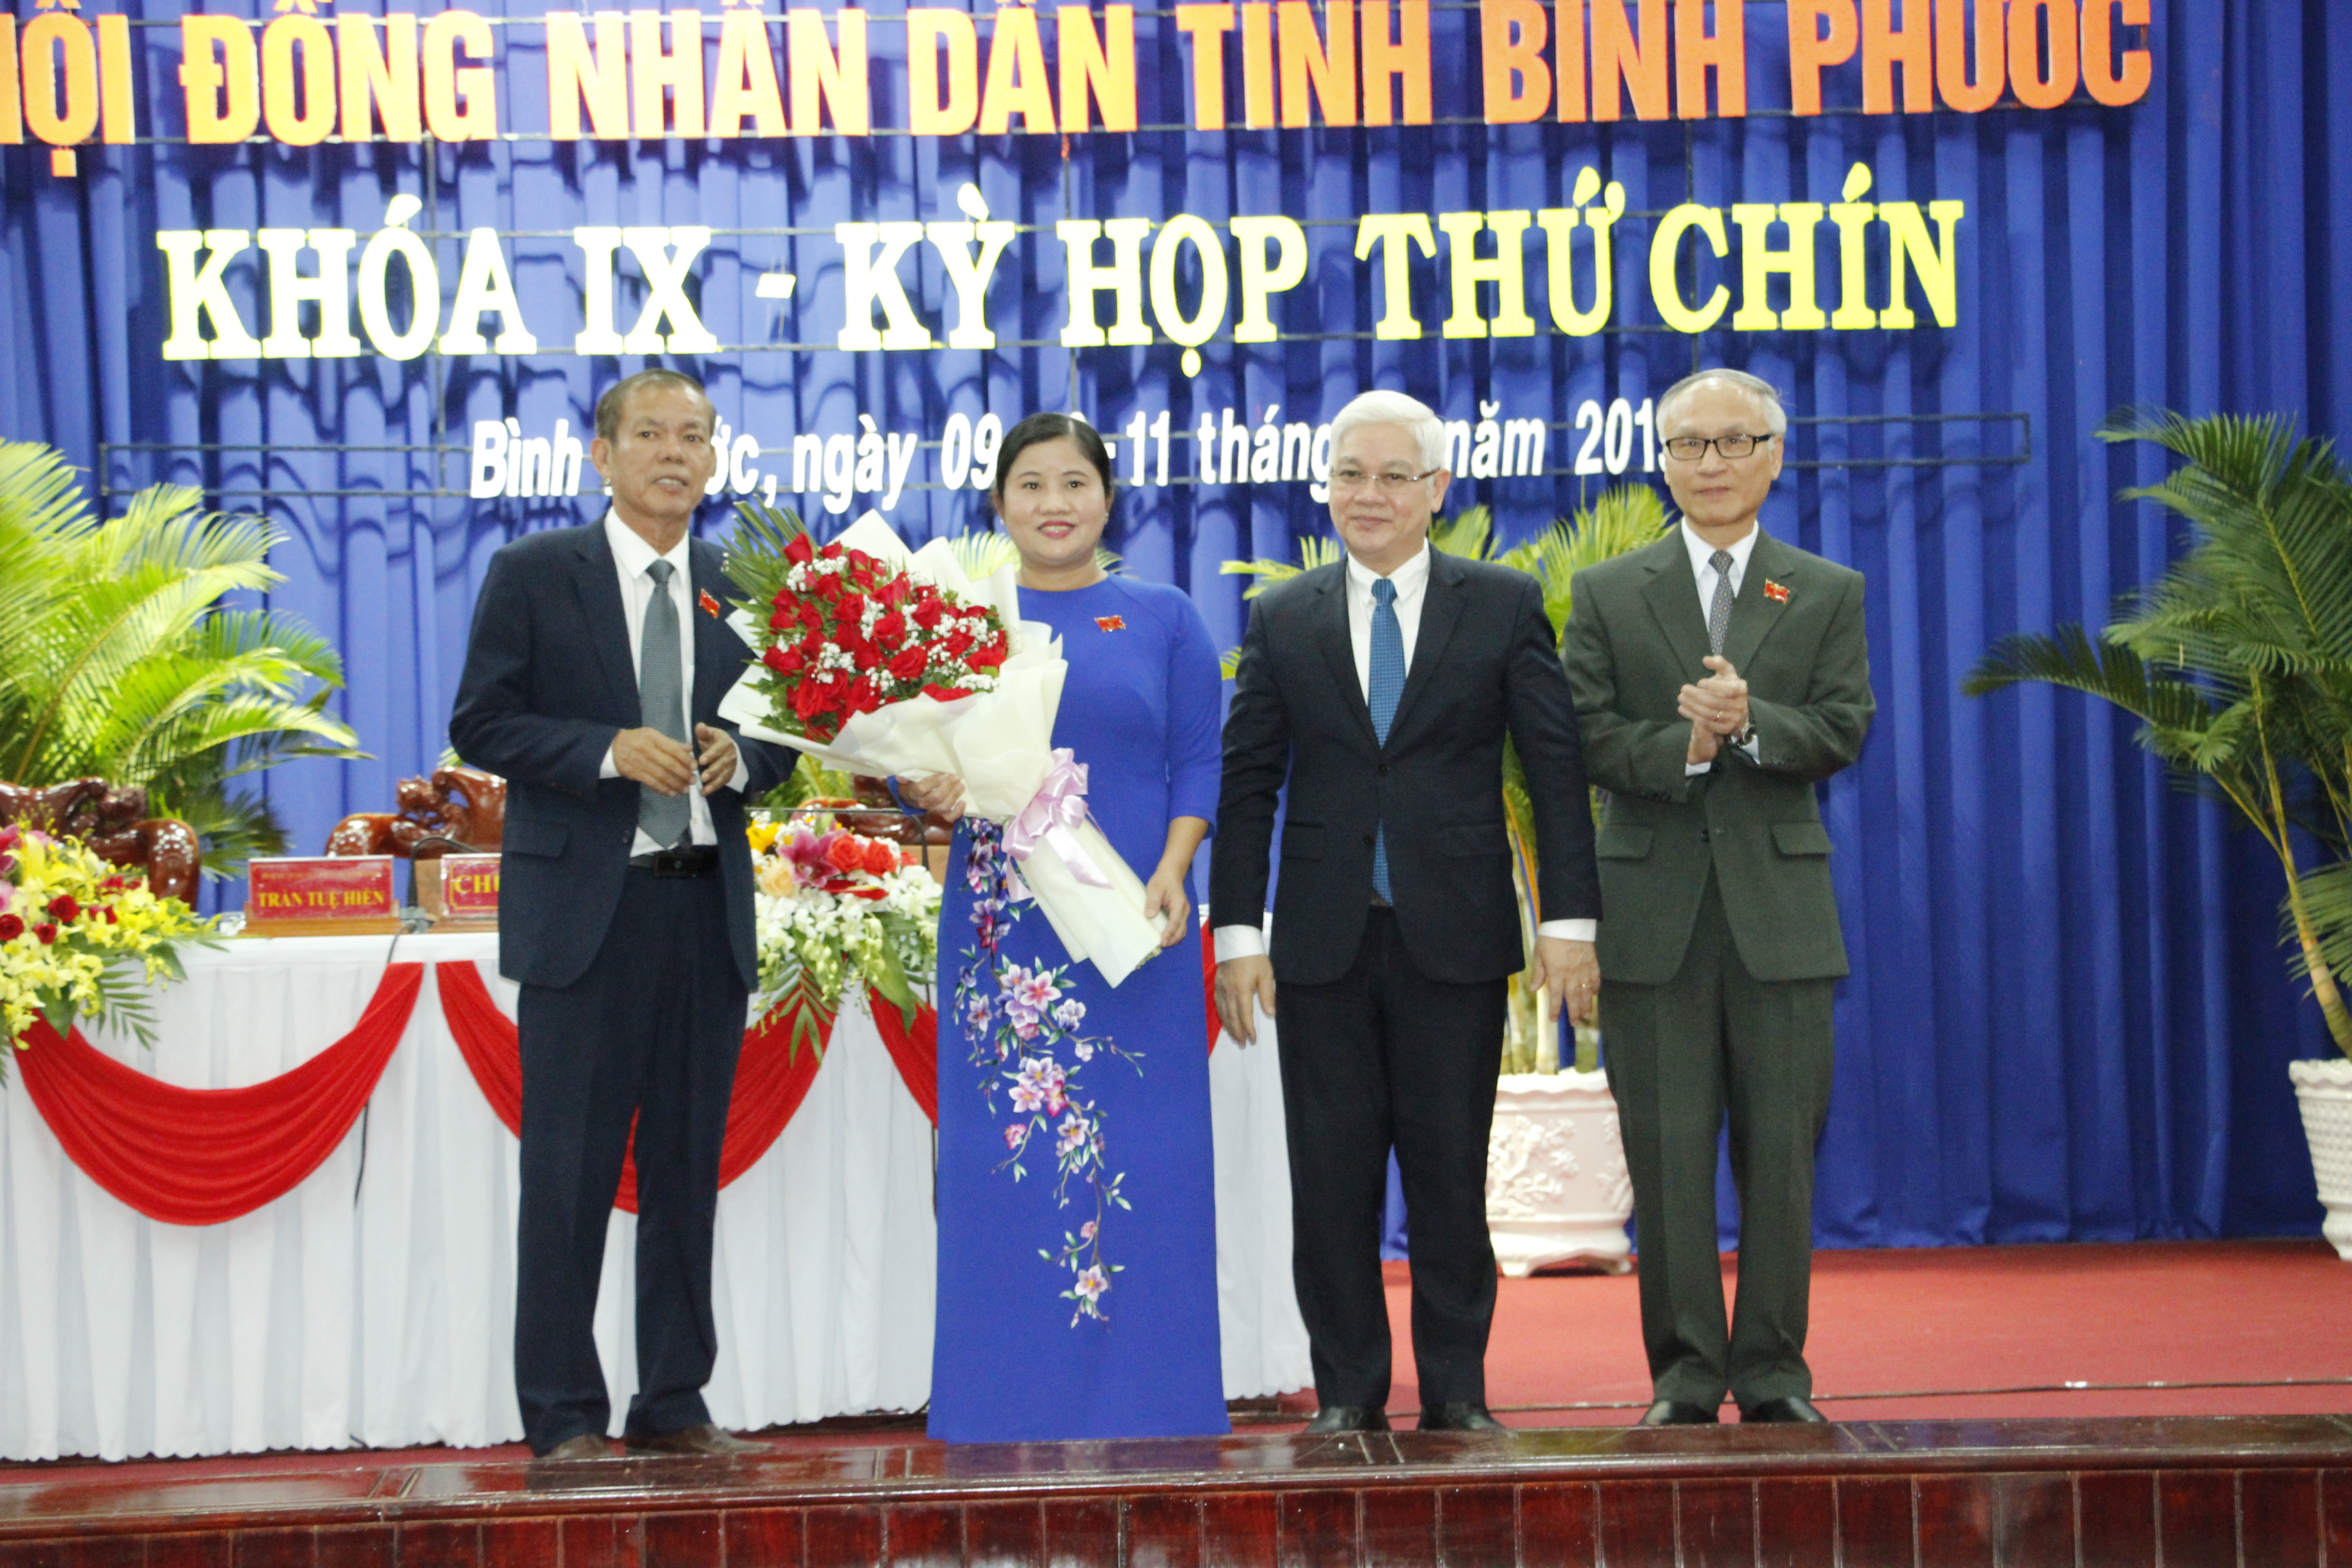 Lãnh đạo Tỉnh ủy, HĐND tỉnh Bình Phước tặng hoa chúc mừng bà Trần Tuệ Hiền 